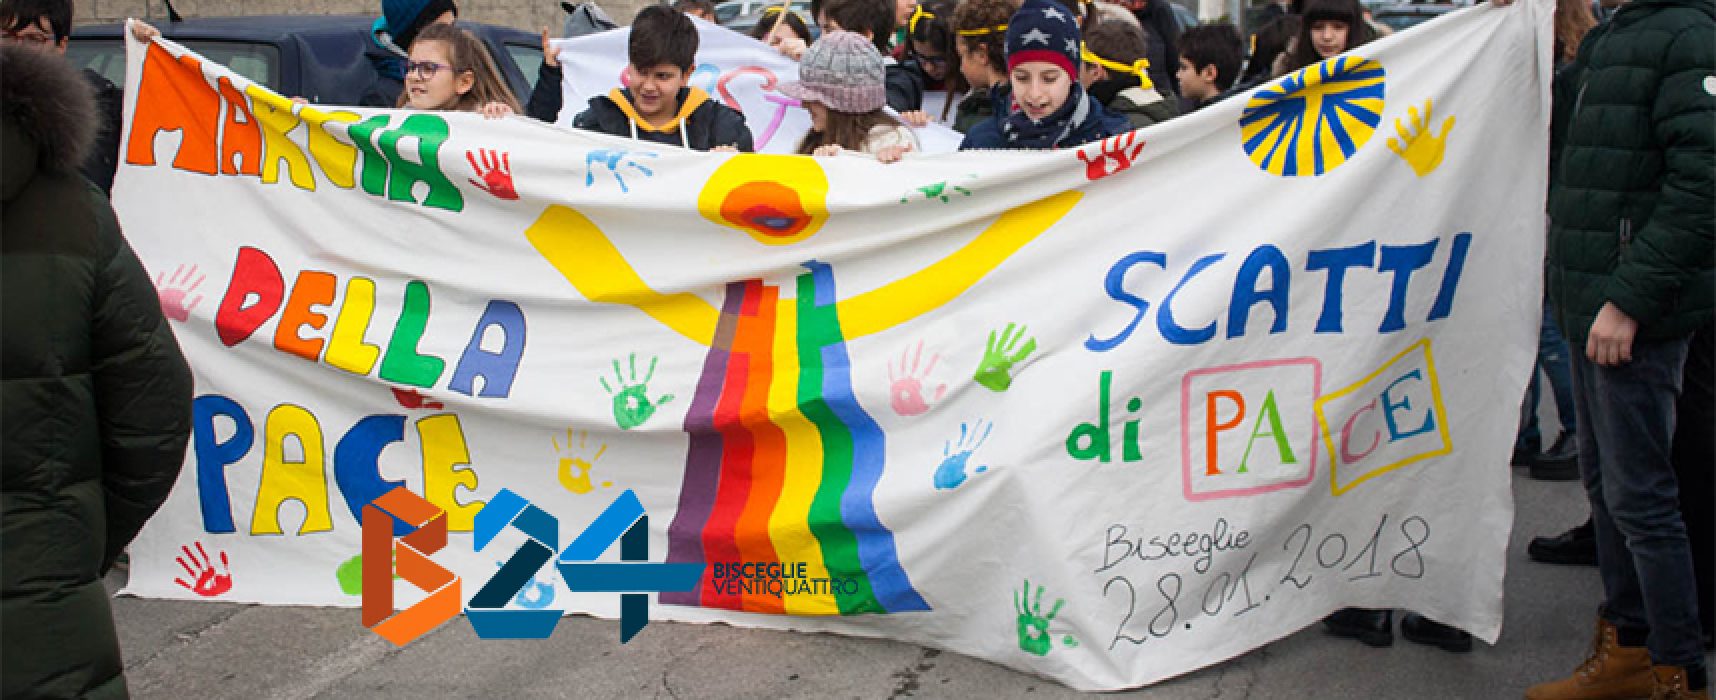 La Marcia della Pace colora di vivacità ed umanità le strade di Bisceglie / FOTO